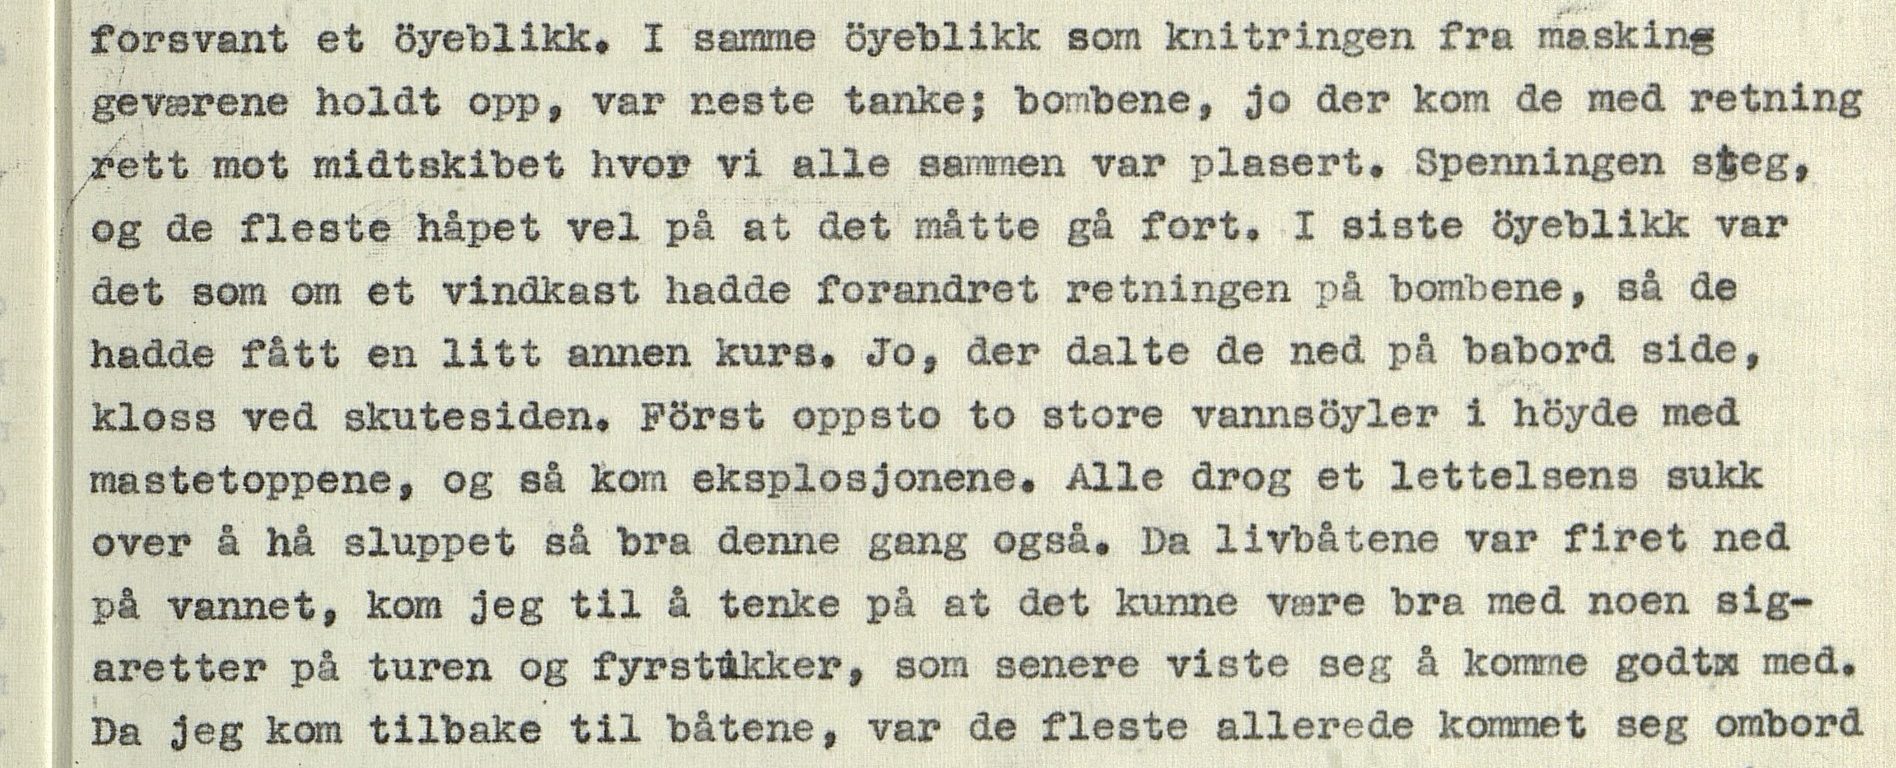 Kvernaasposten 1949 2. årgang nr. 1. s. 3